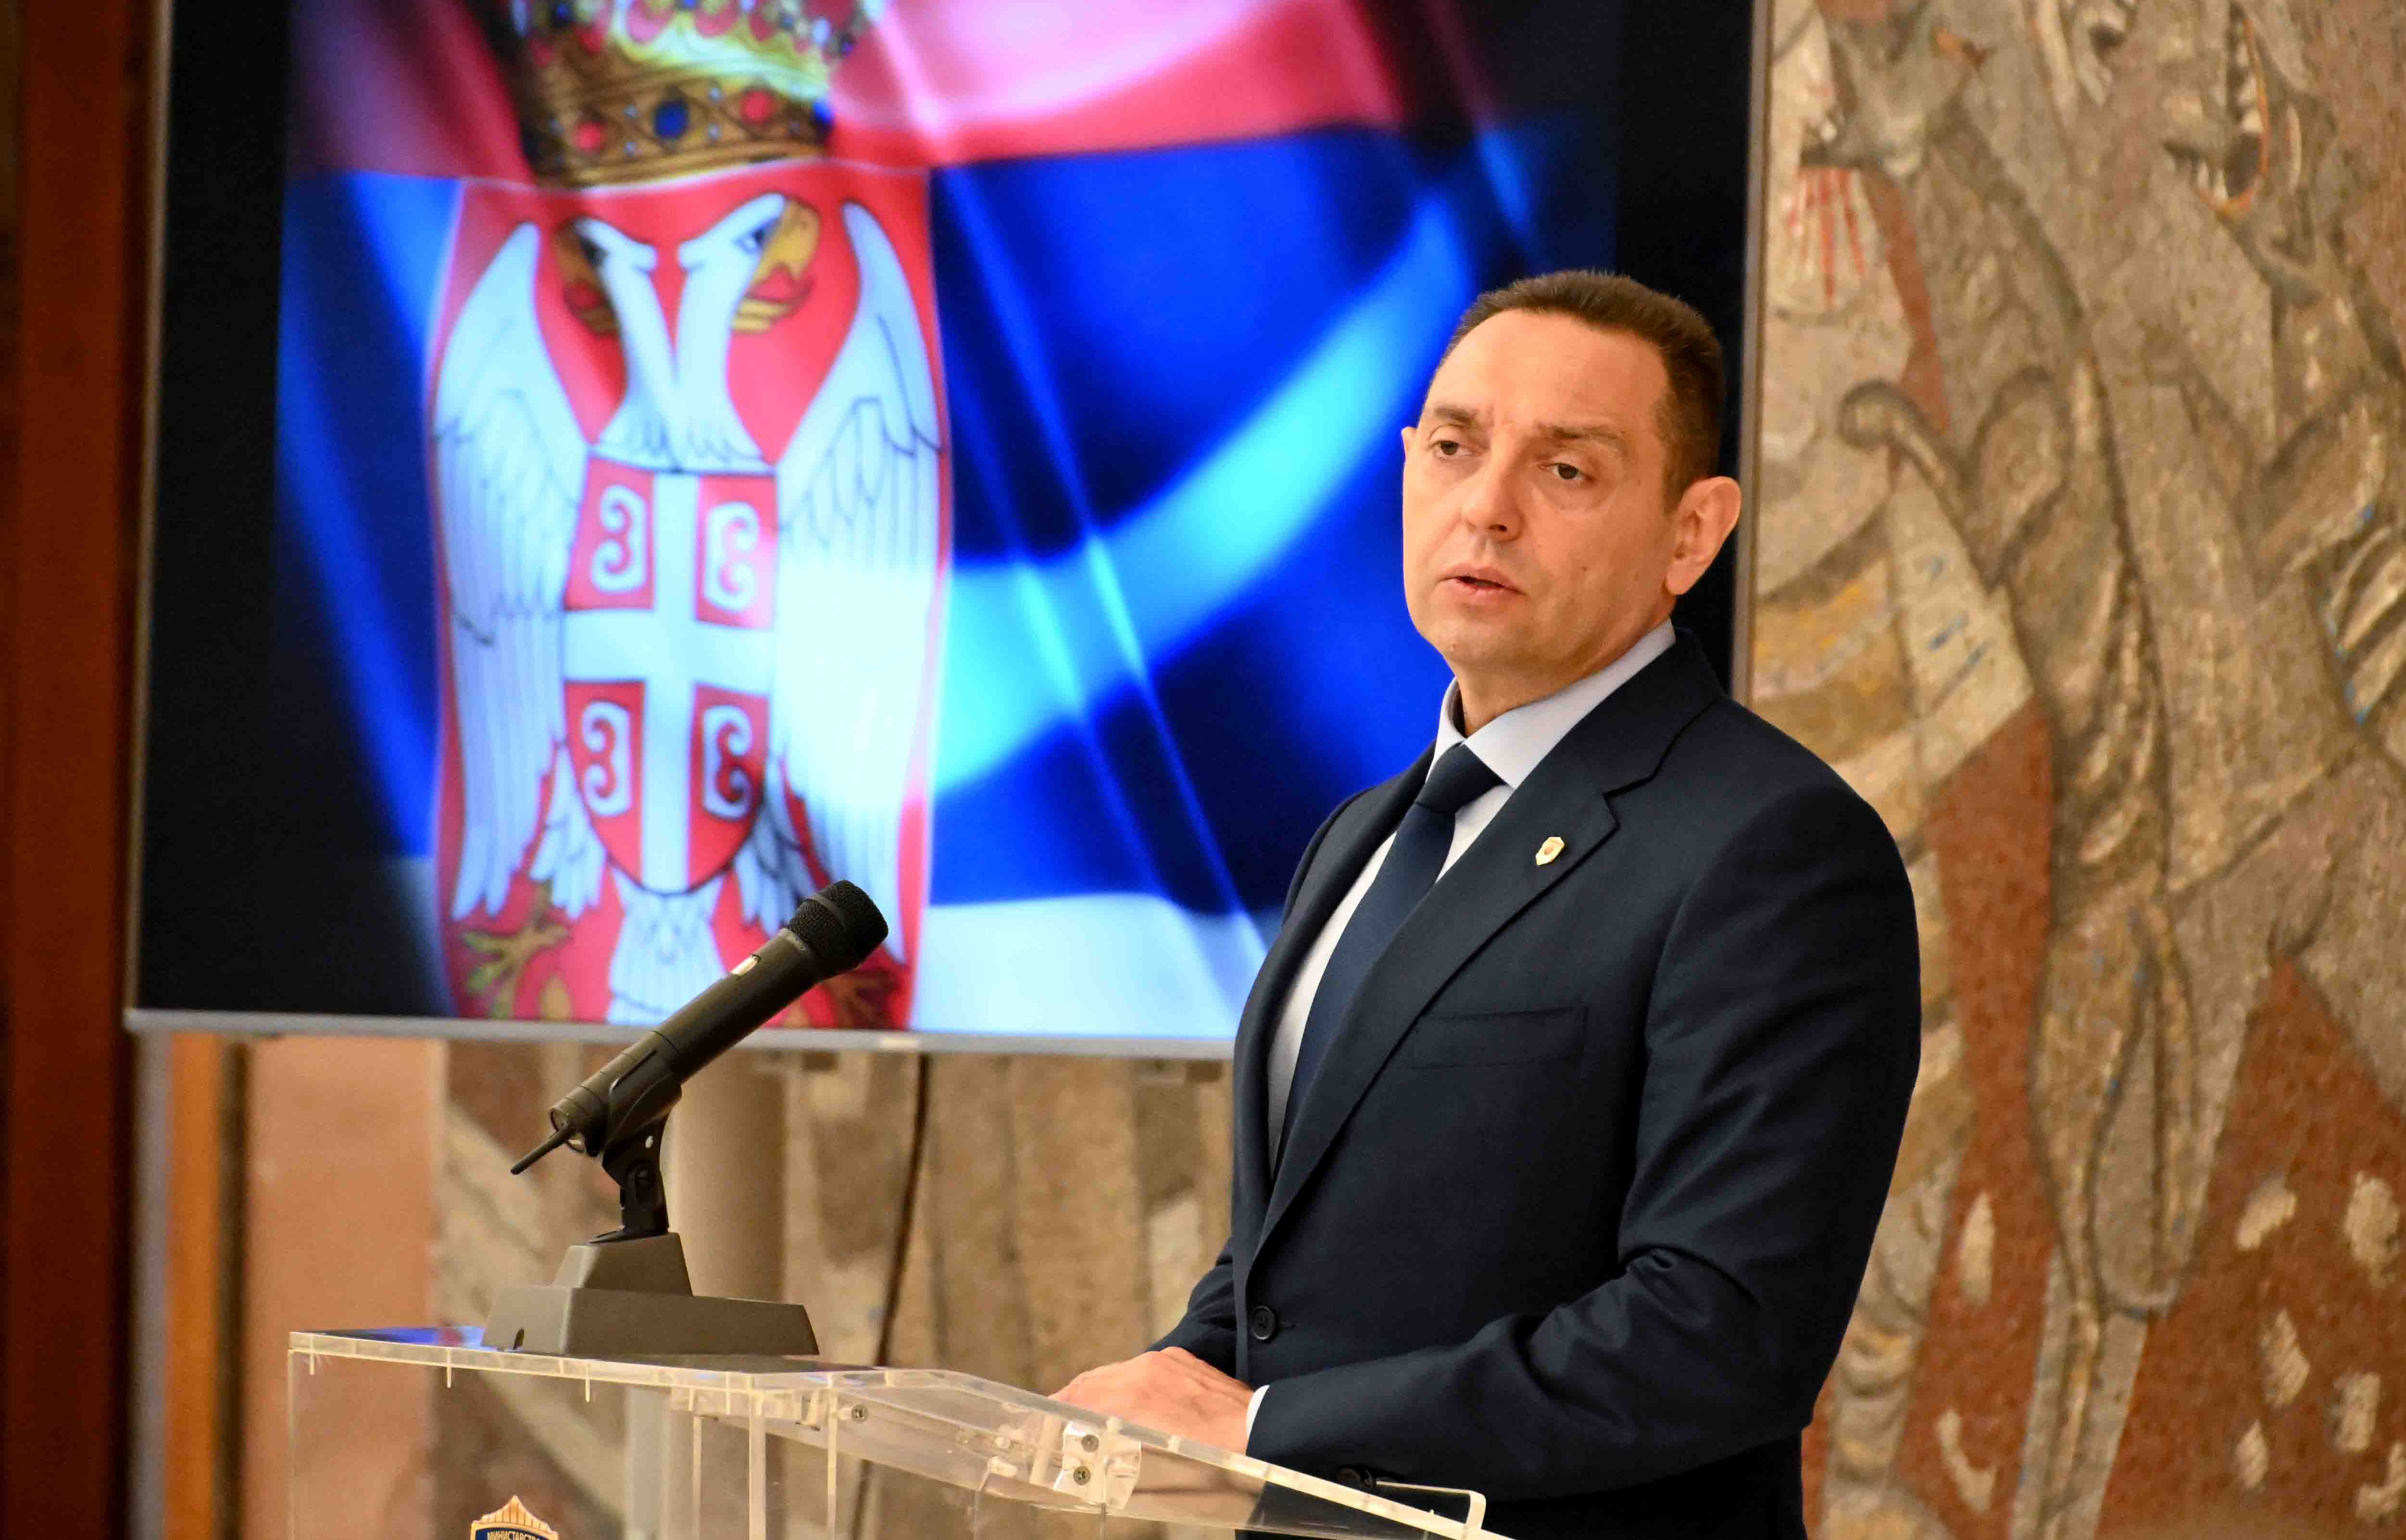 Ministar Aleksandar Vulin: Možda Hil uspe da me skloni iz Vlade, ali ideje samostalne Srbije koja sama odlučuje nećete uspeti